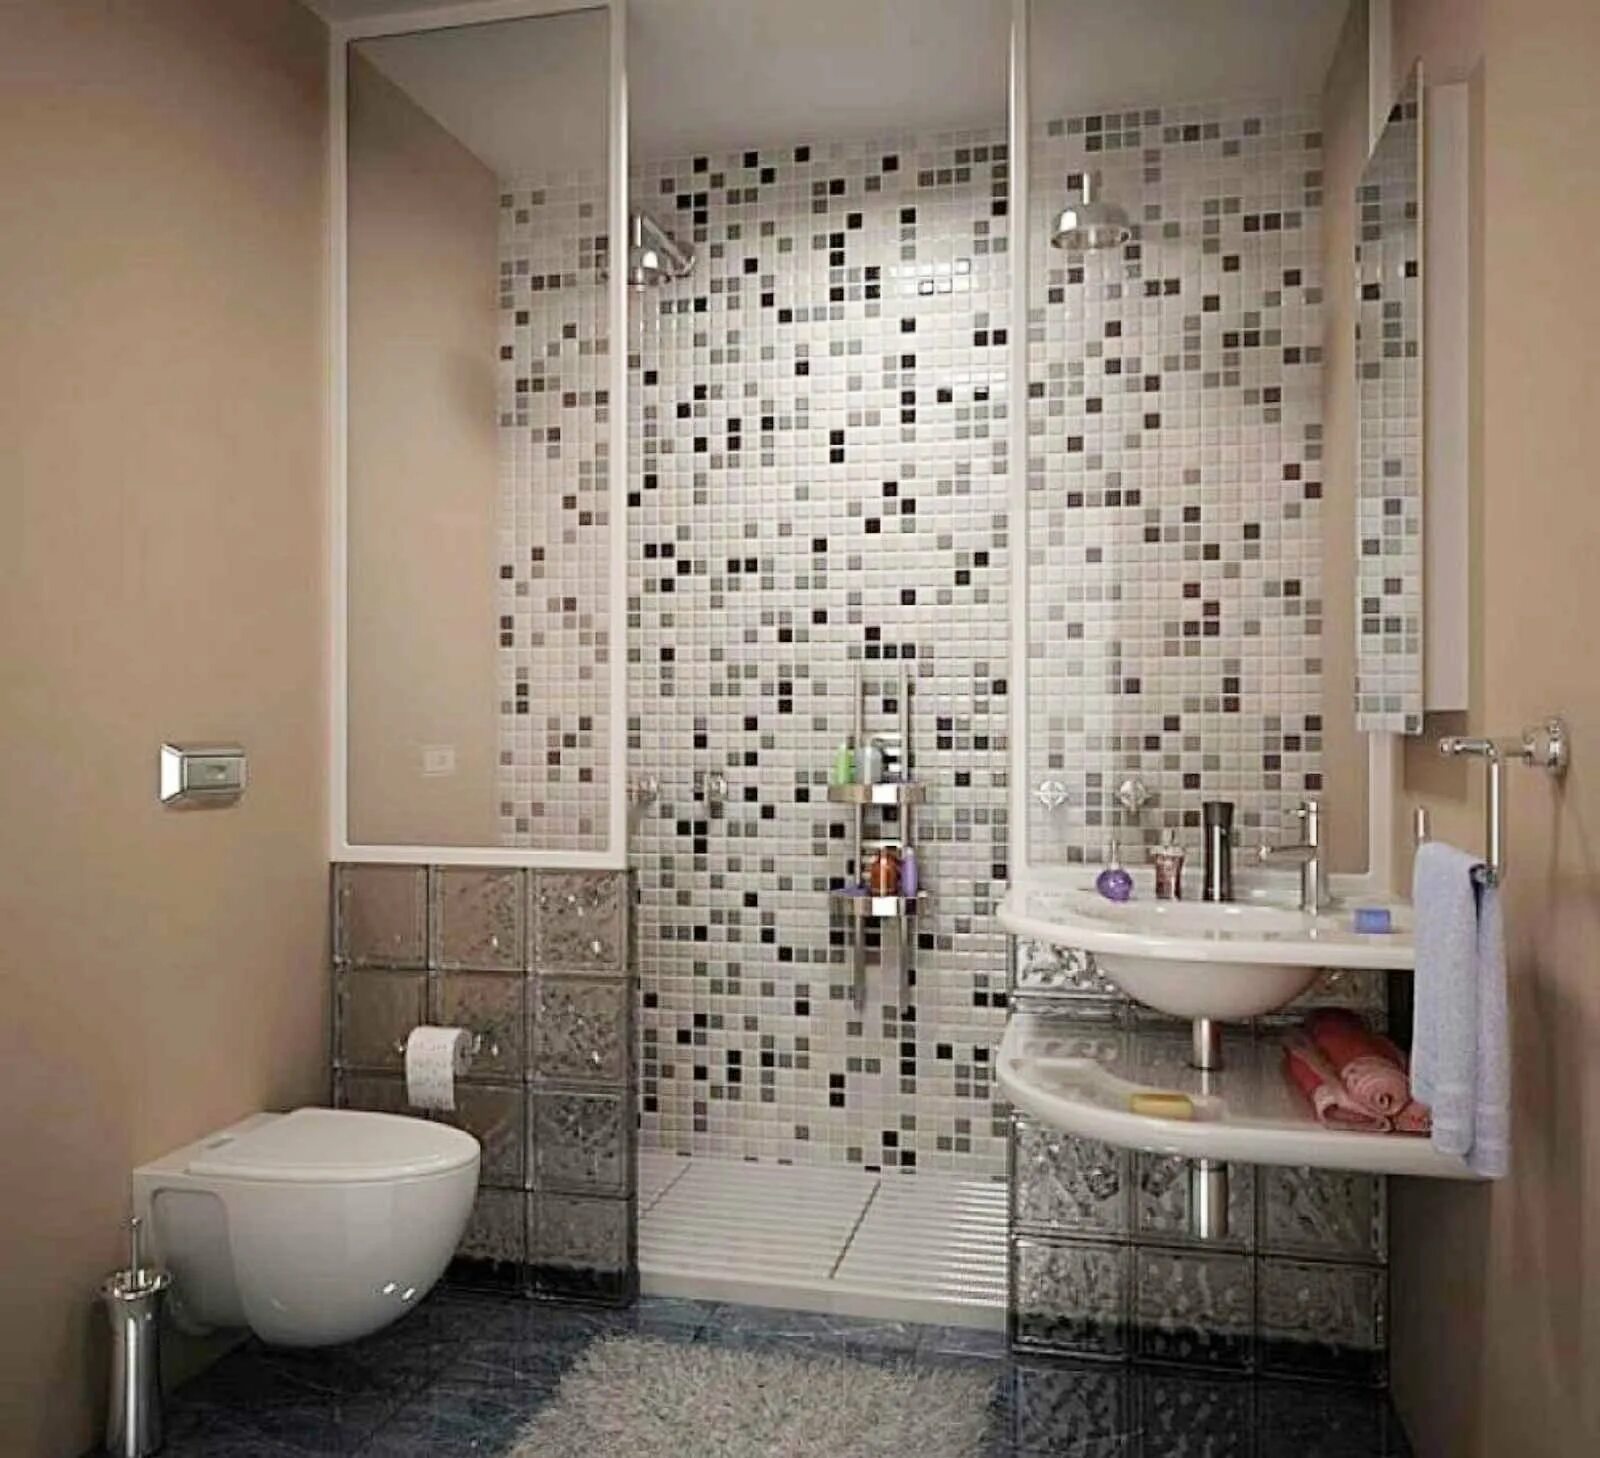 Мозаика для ванной. Плитка для ванной комнаты мозайка. Мозаика в интерьере ванной комнаты. Отделка ванной мозаикой. Интересные ремонты ванных комнат